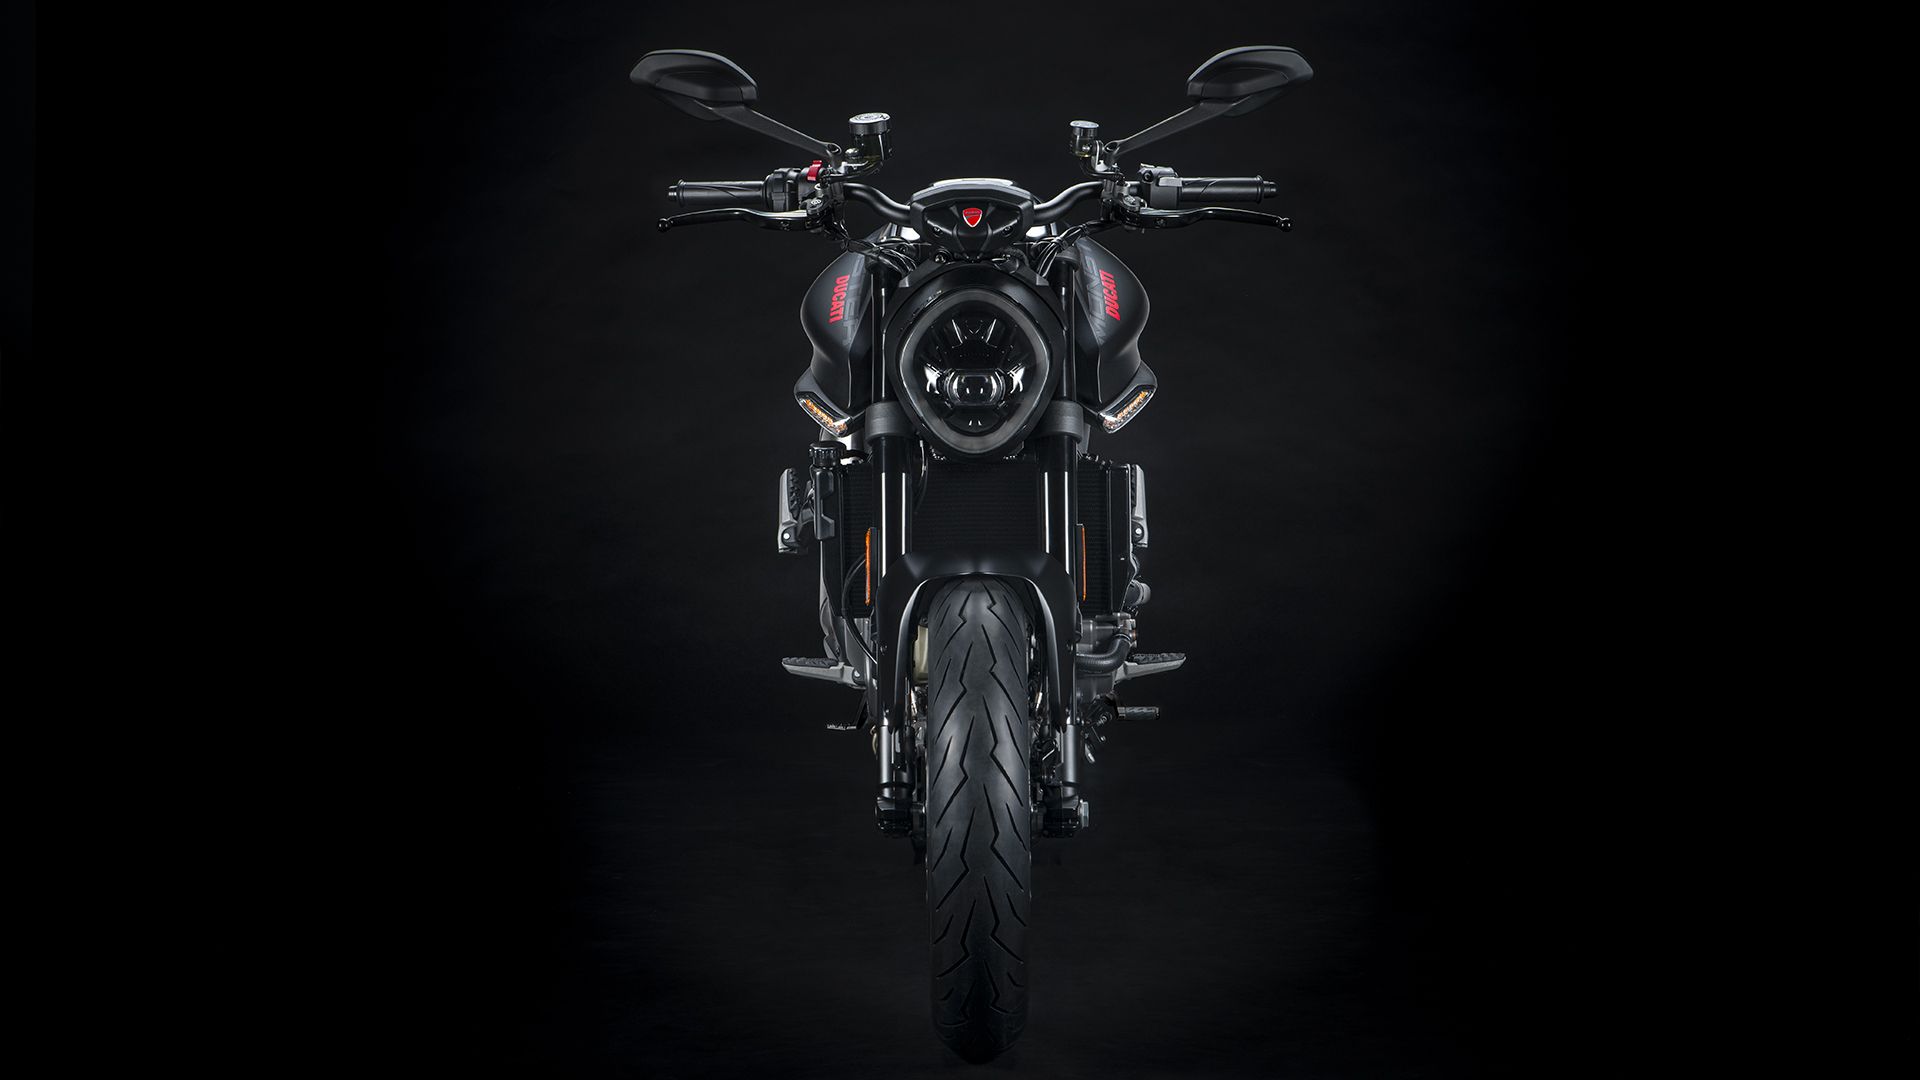 Ducati_Monster